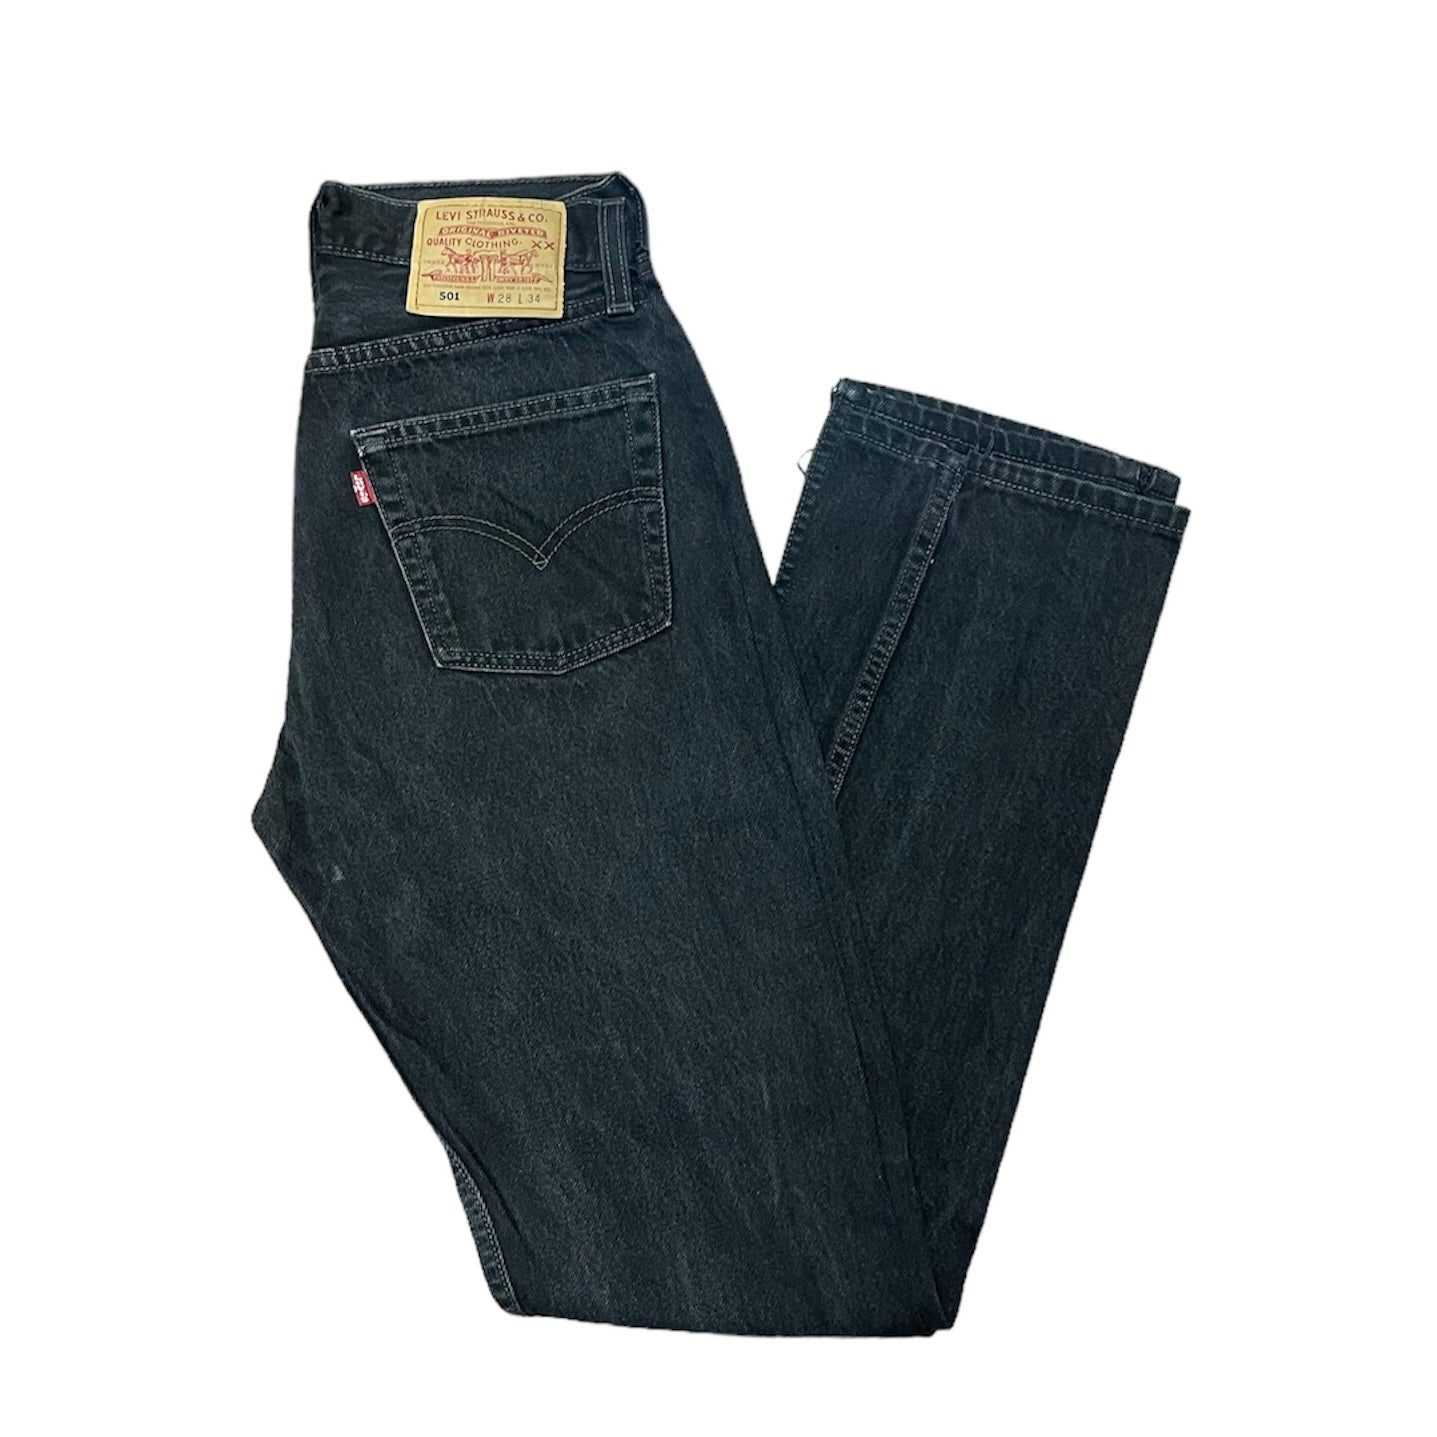 Vintage Levis 501 Black/Grey Jeans (W28/L34)